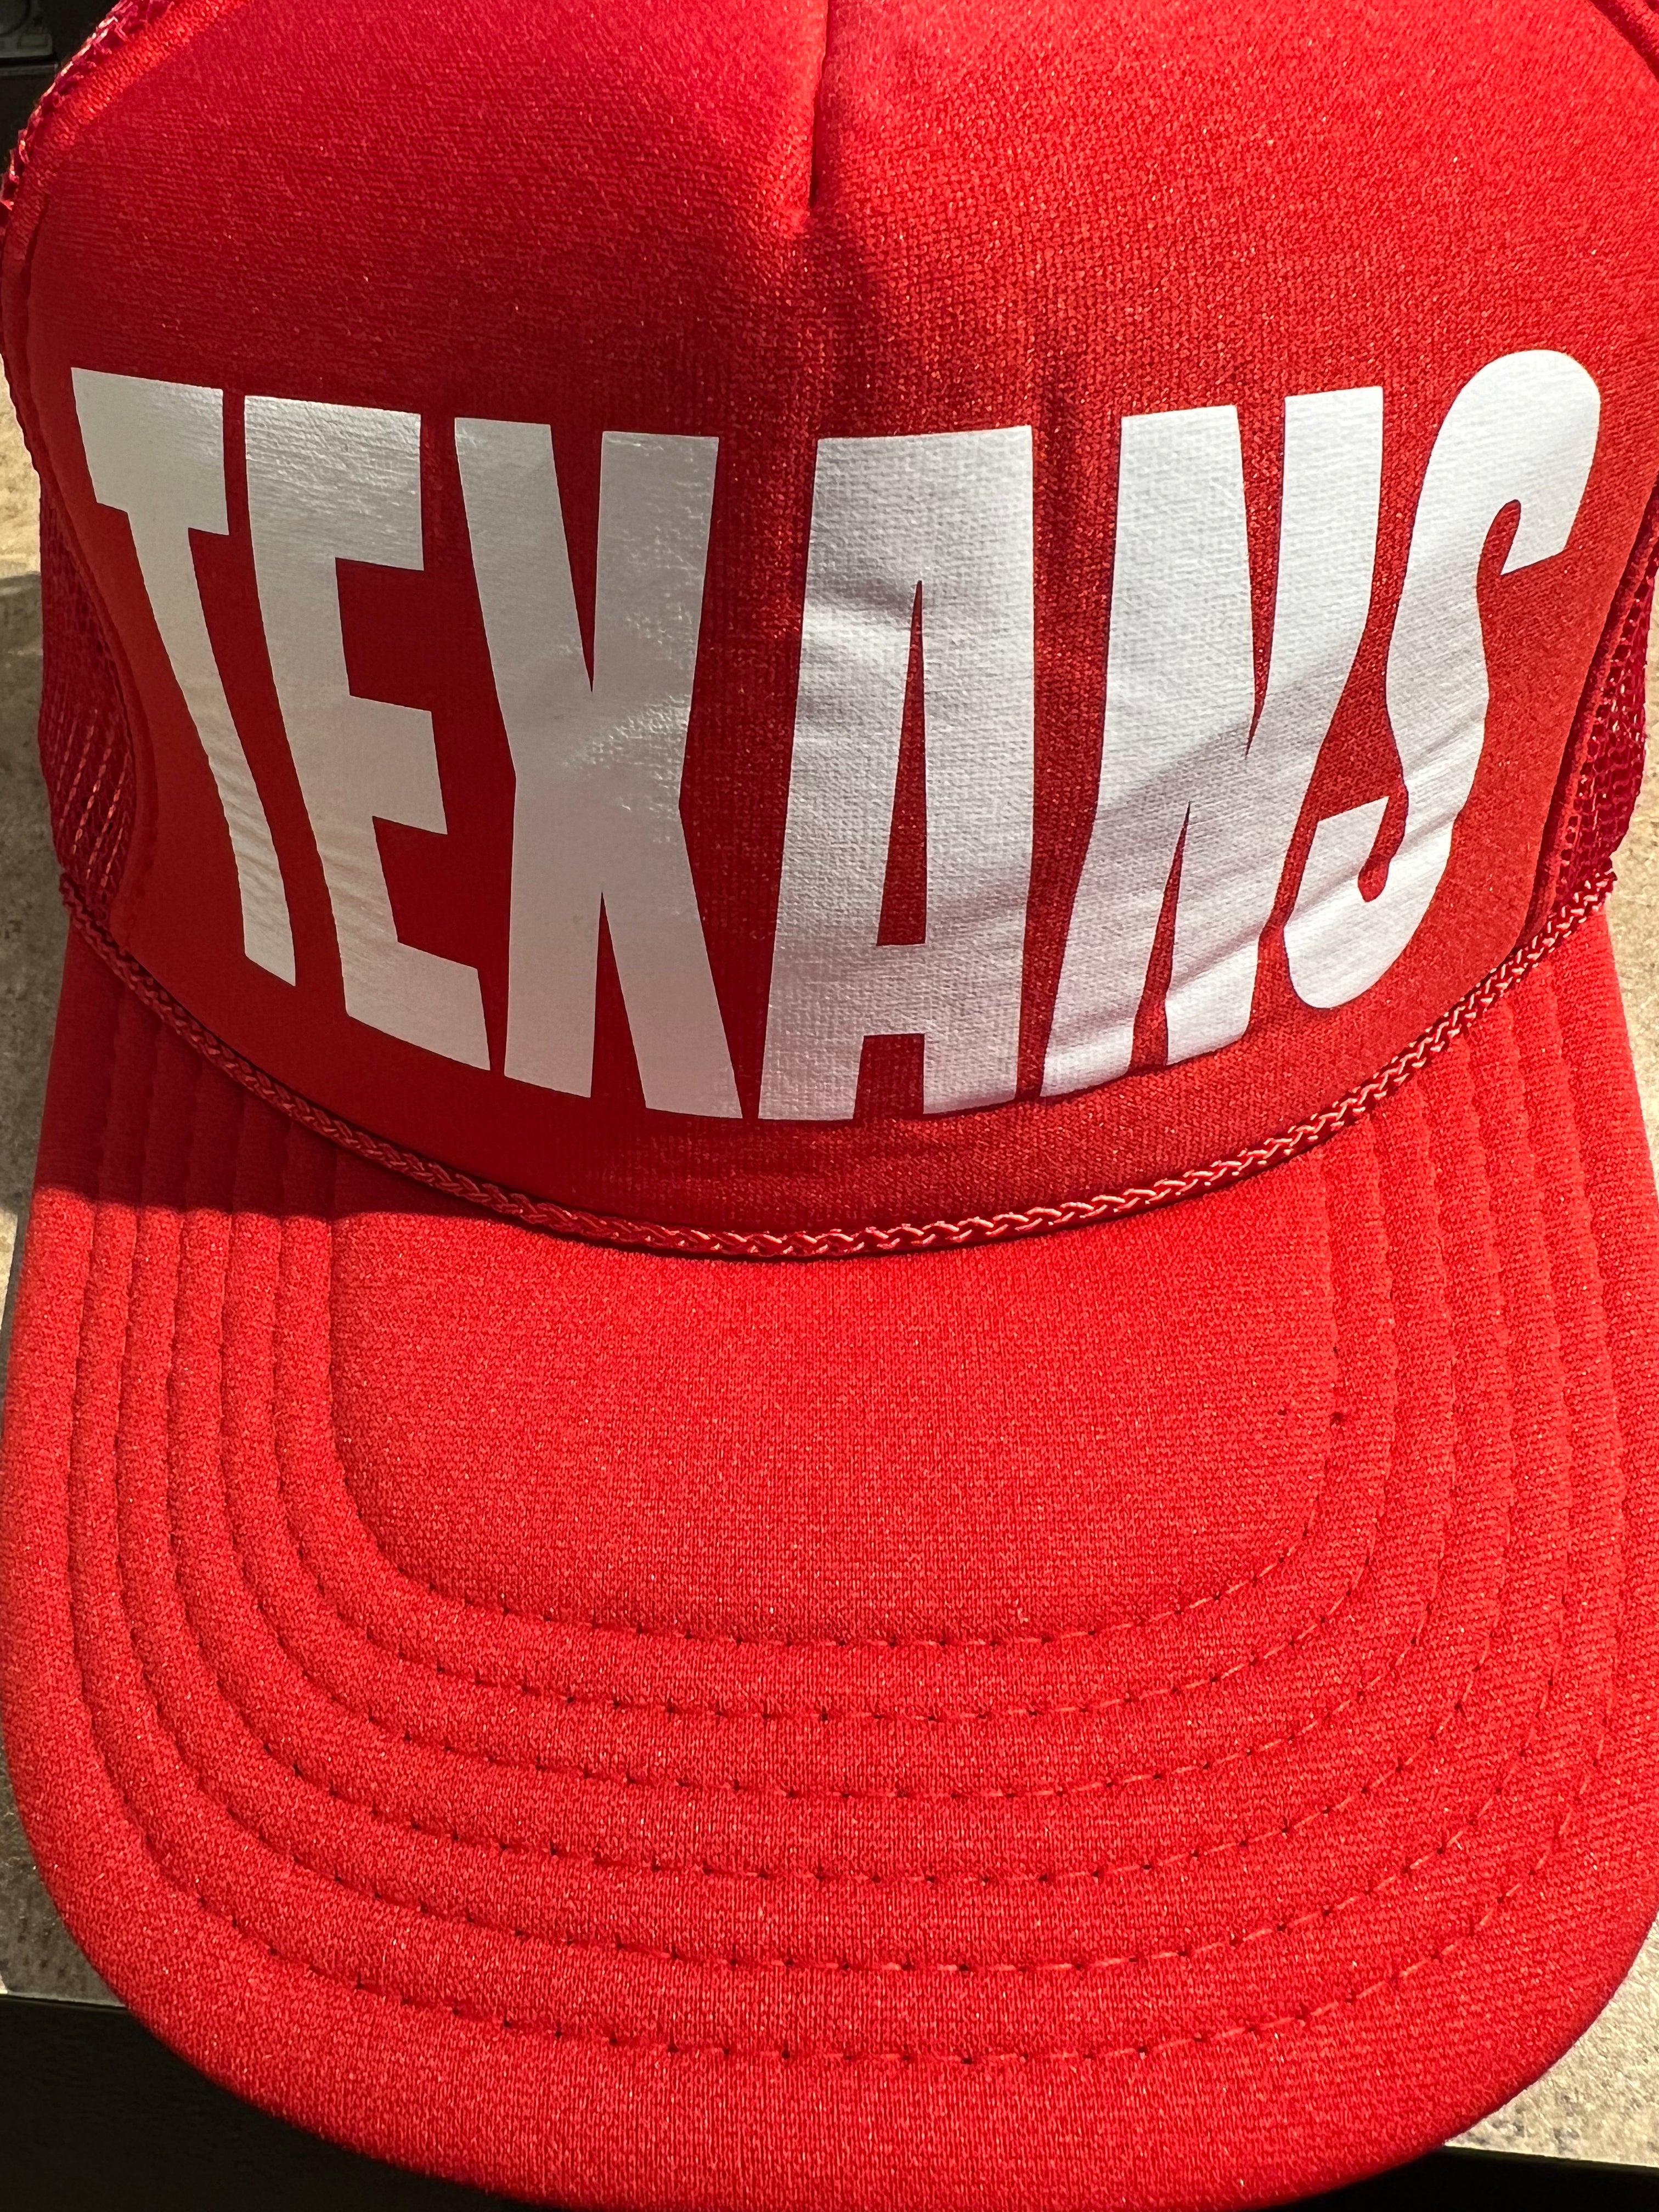 Texans Trucker Hat